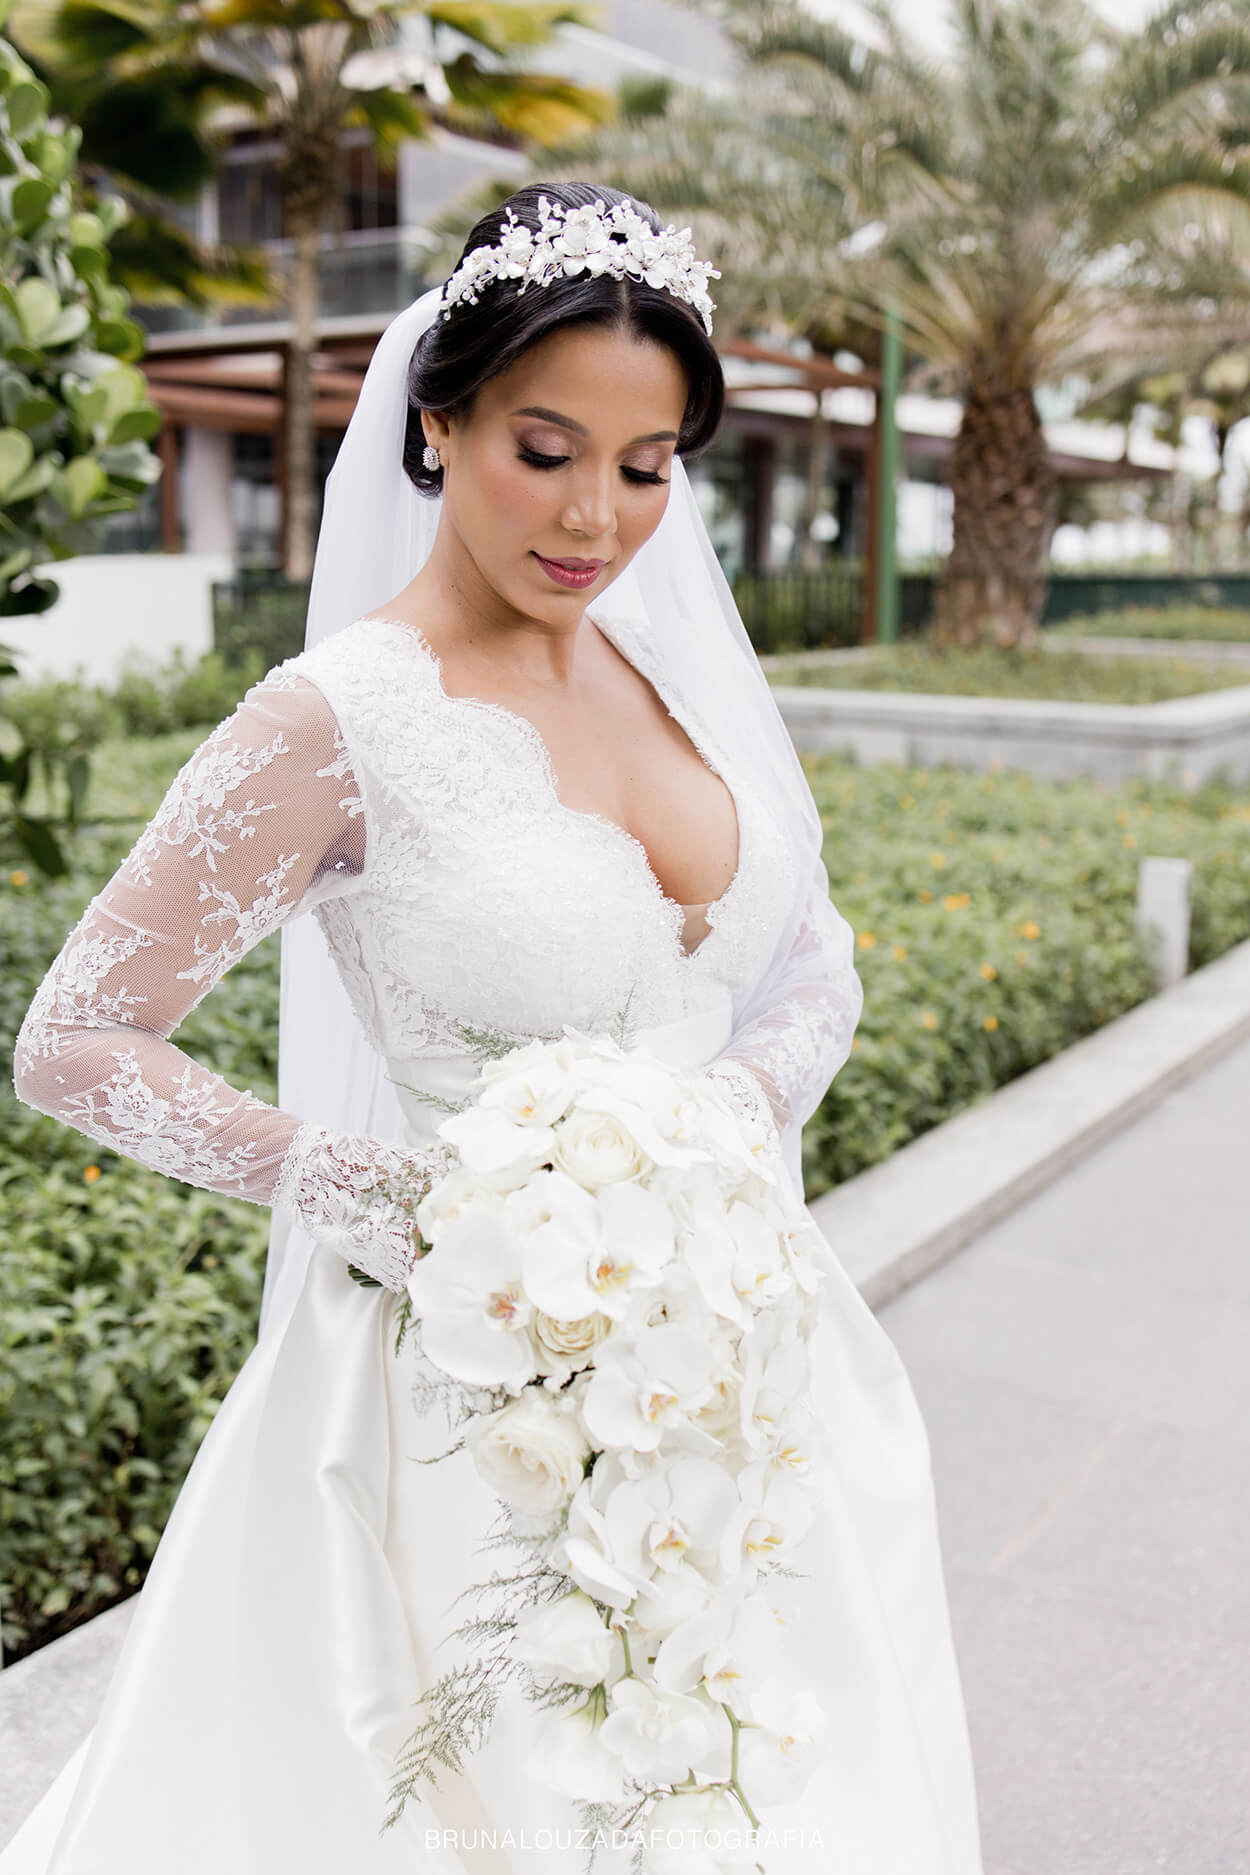 Mulher com vetsdiode noiva com mangas compridas segurando buquê com rosas e orquídeas brancas